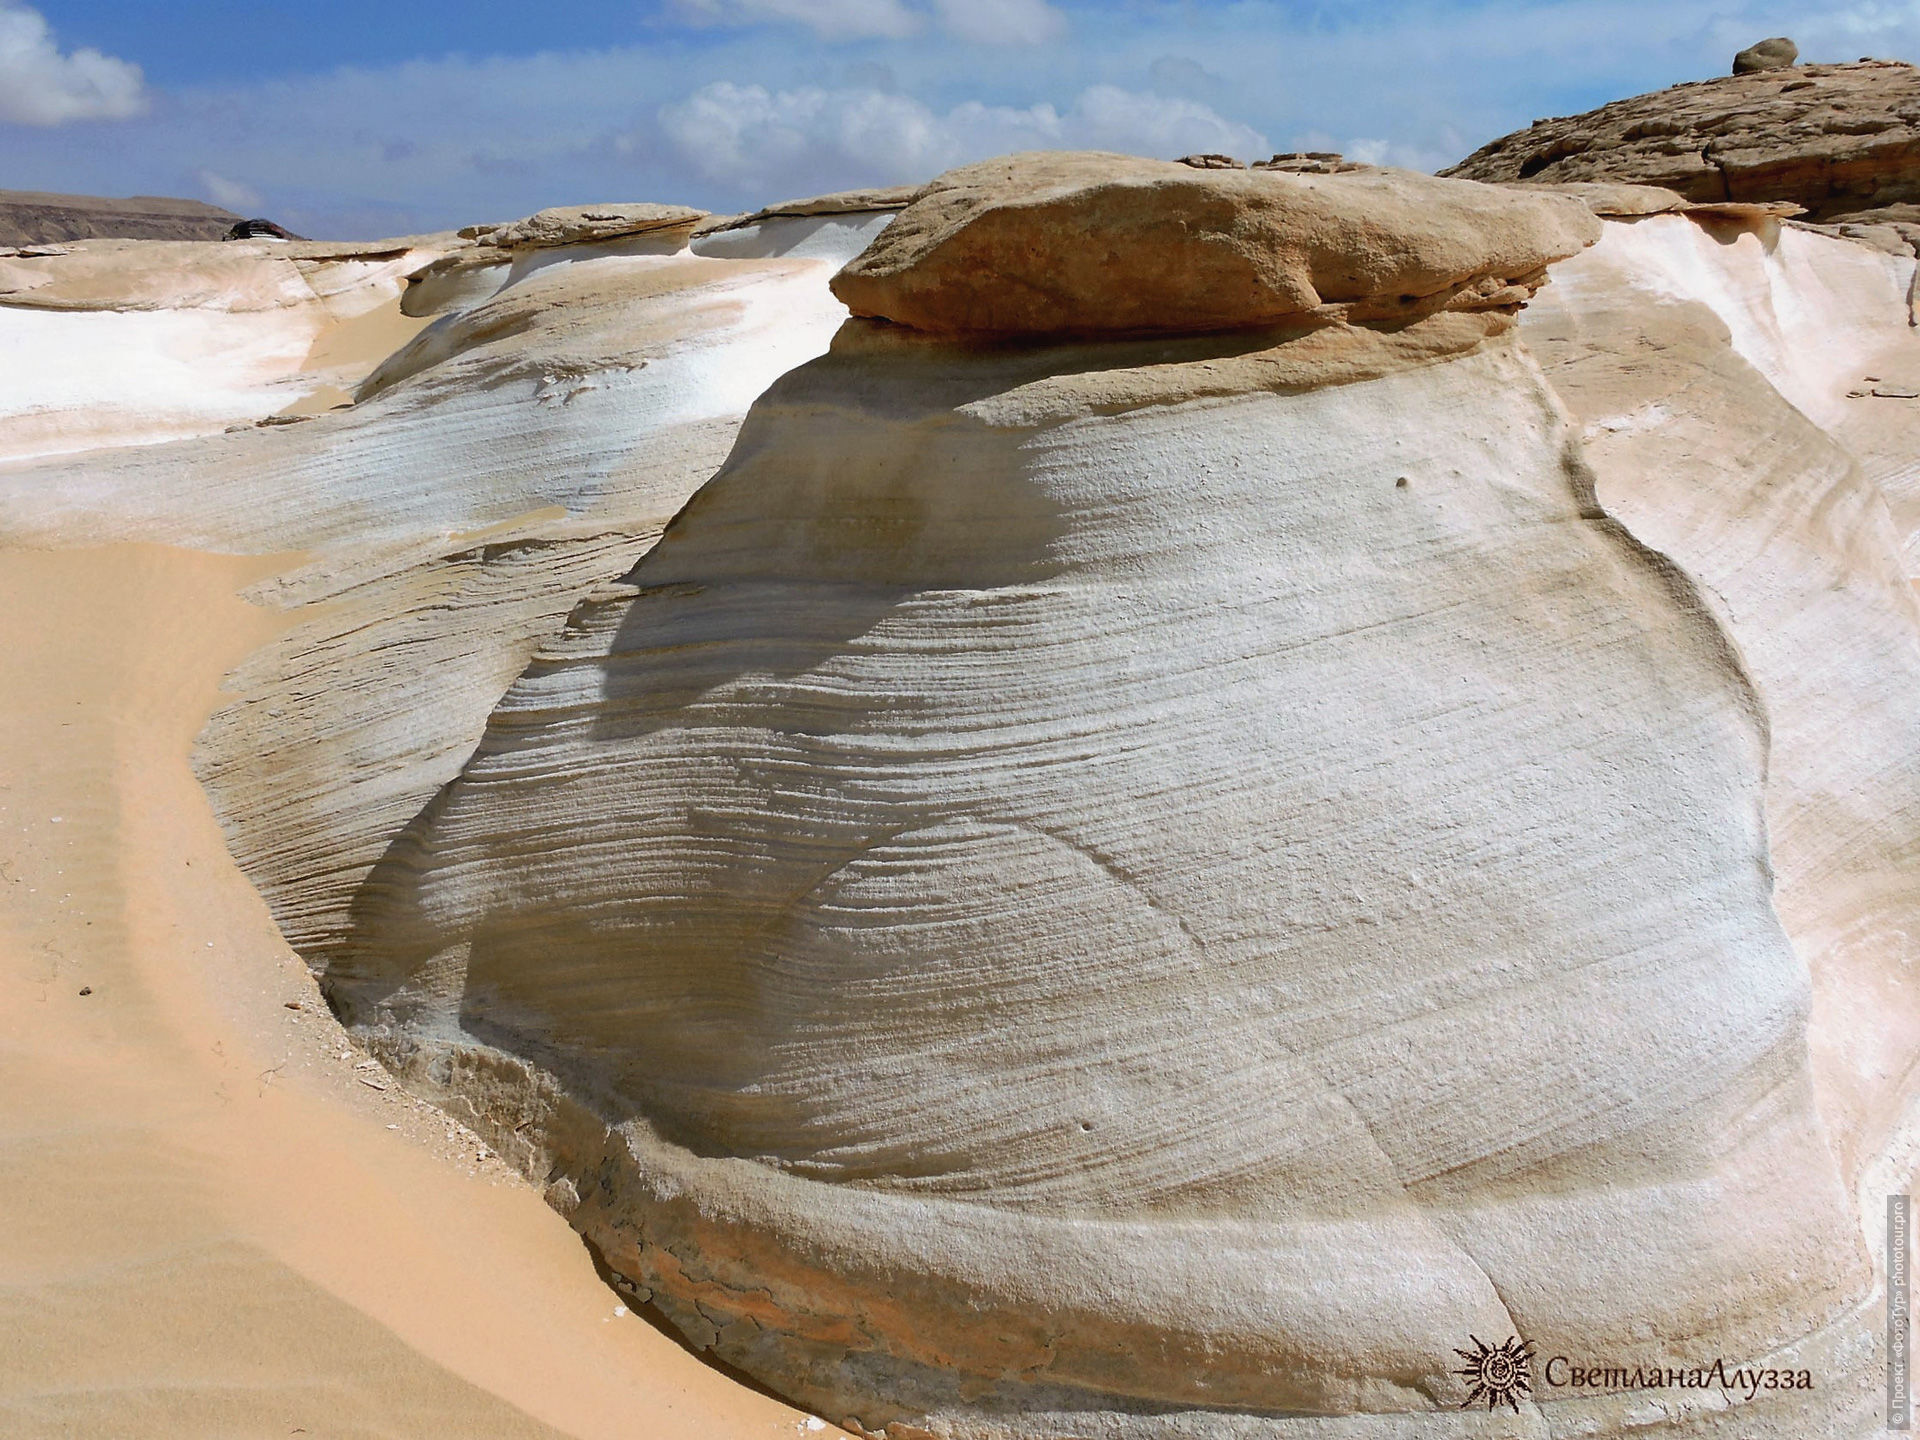 Огромные истуканы в Белой Пустыне, приключенческий фототур/тур пустыни и горы Синая, Египет, 27 ноября - 8 декабря 2021 года.